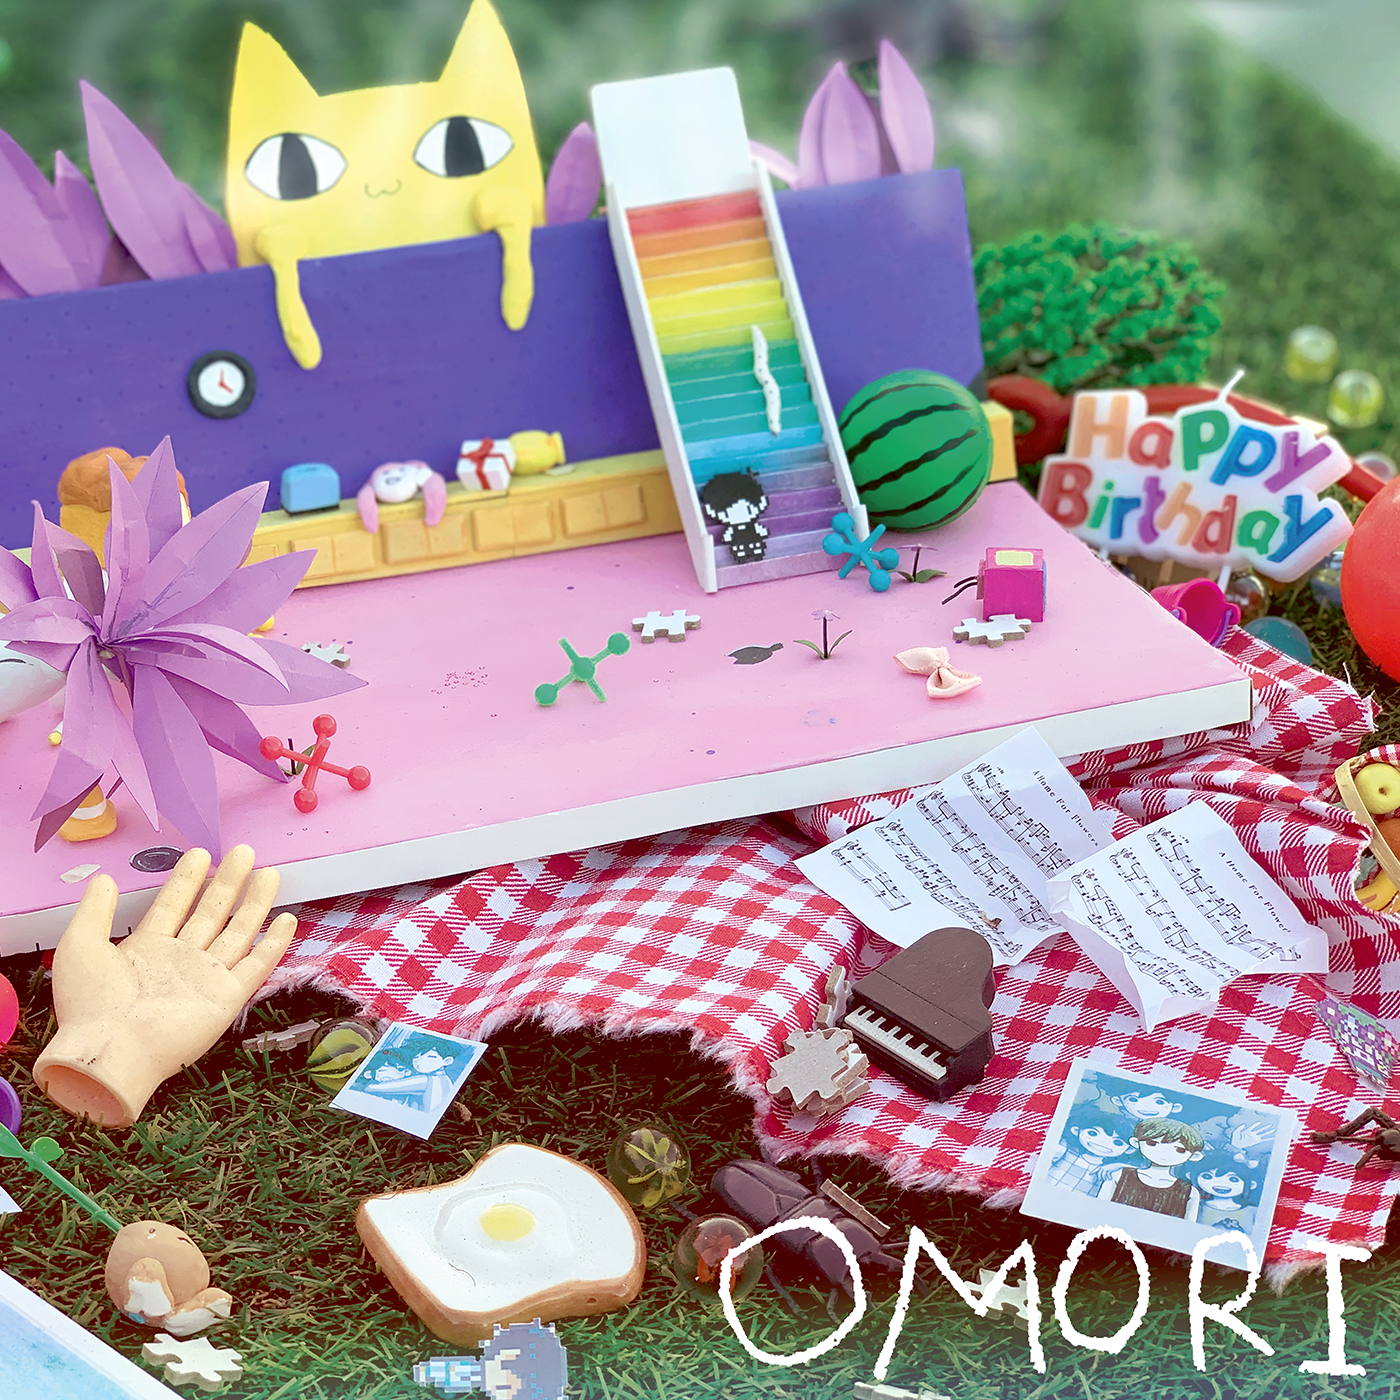 OMORI OST (2020) MP3 - Download OMORI OST (2020) Soundtracks For FREE!